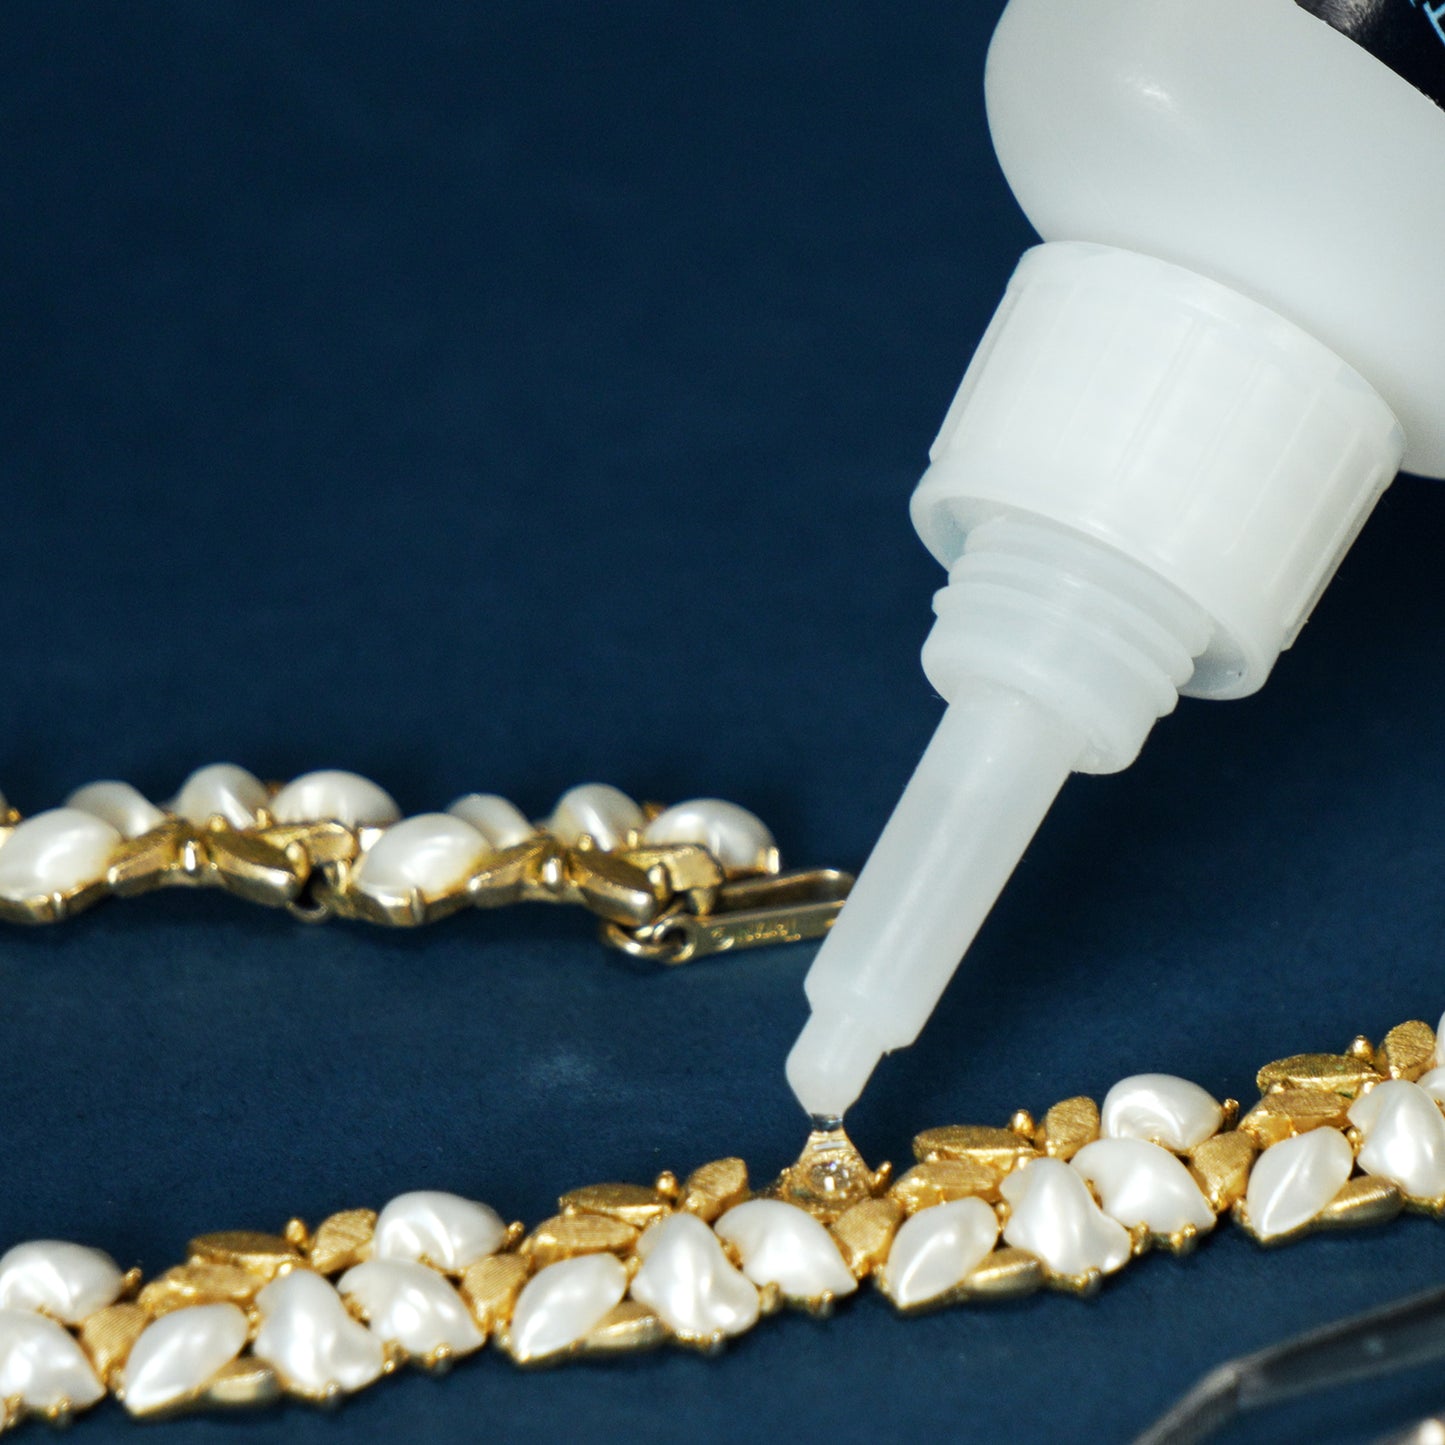 Repairing Jewelry with TotalBoat Totalbond Medium CA Glue